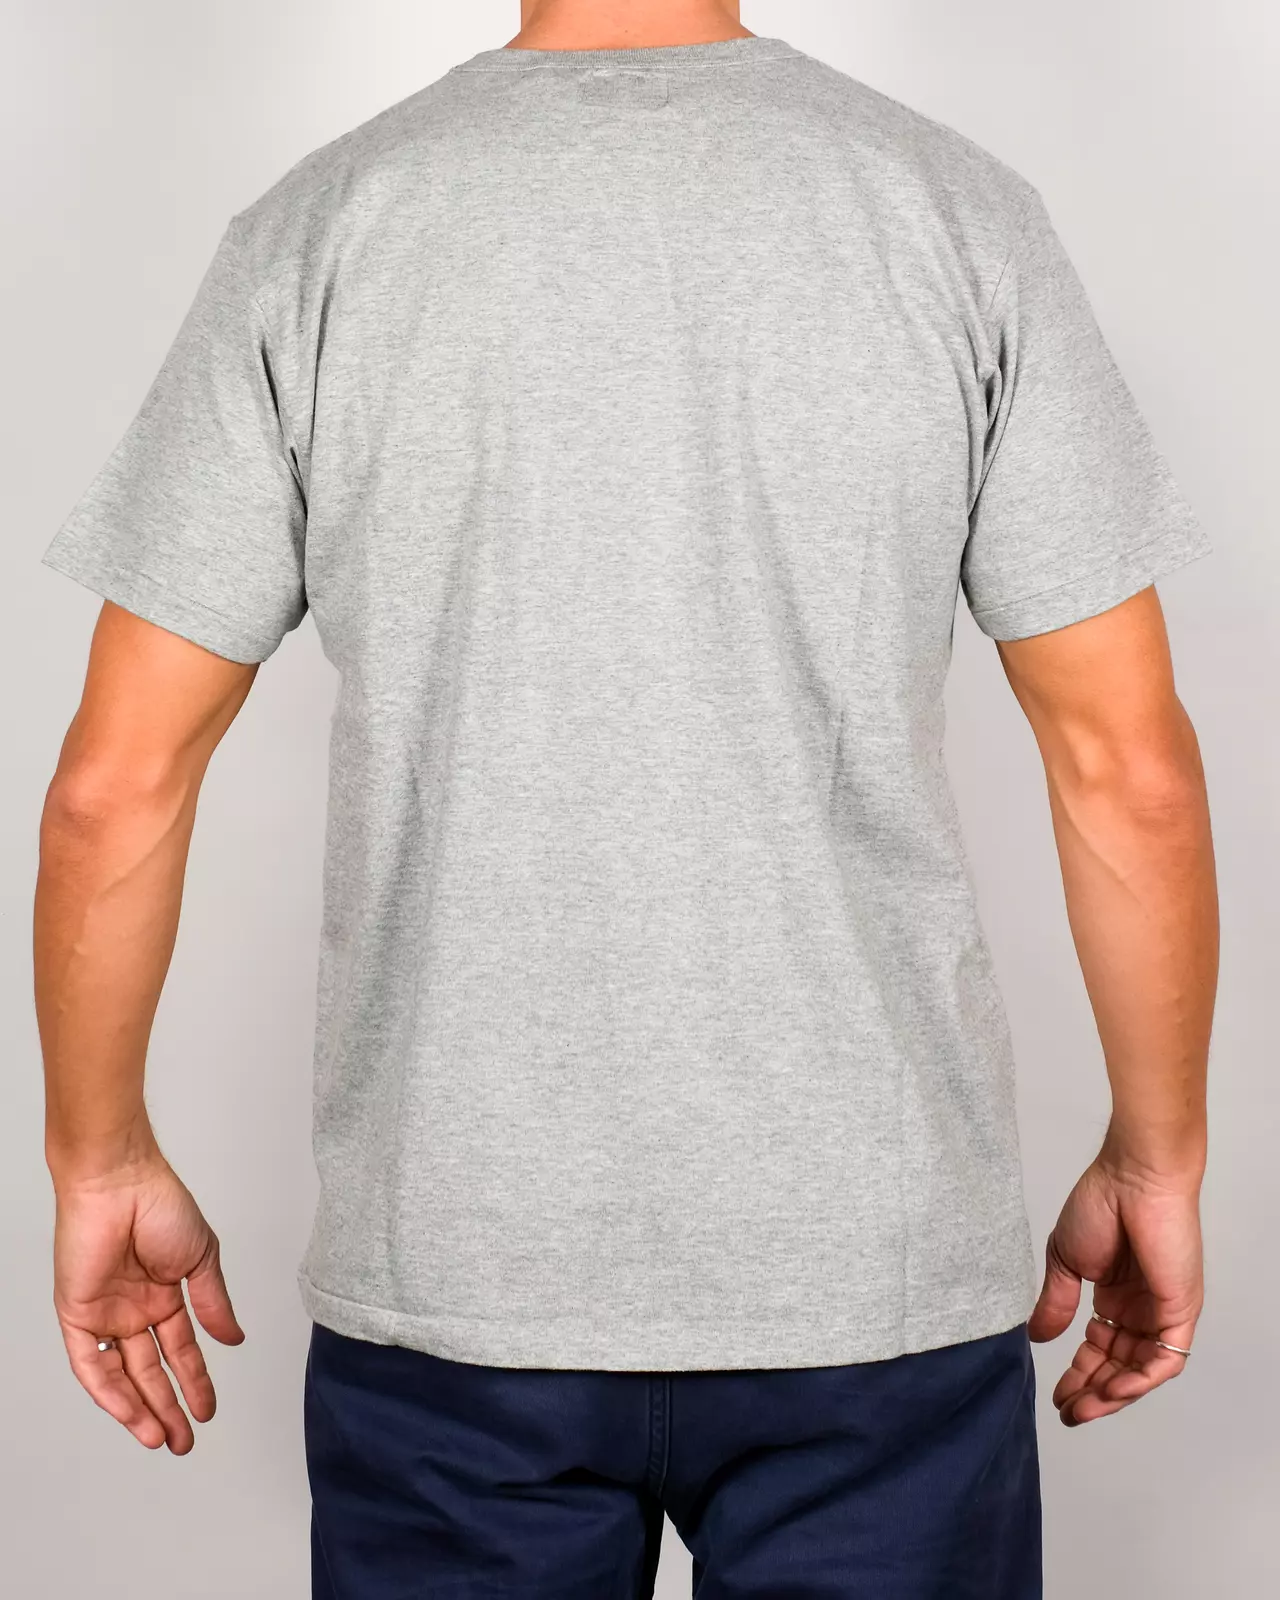 Haleiwa T-shirt - Hambledon Grey - S